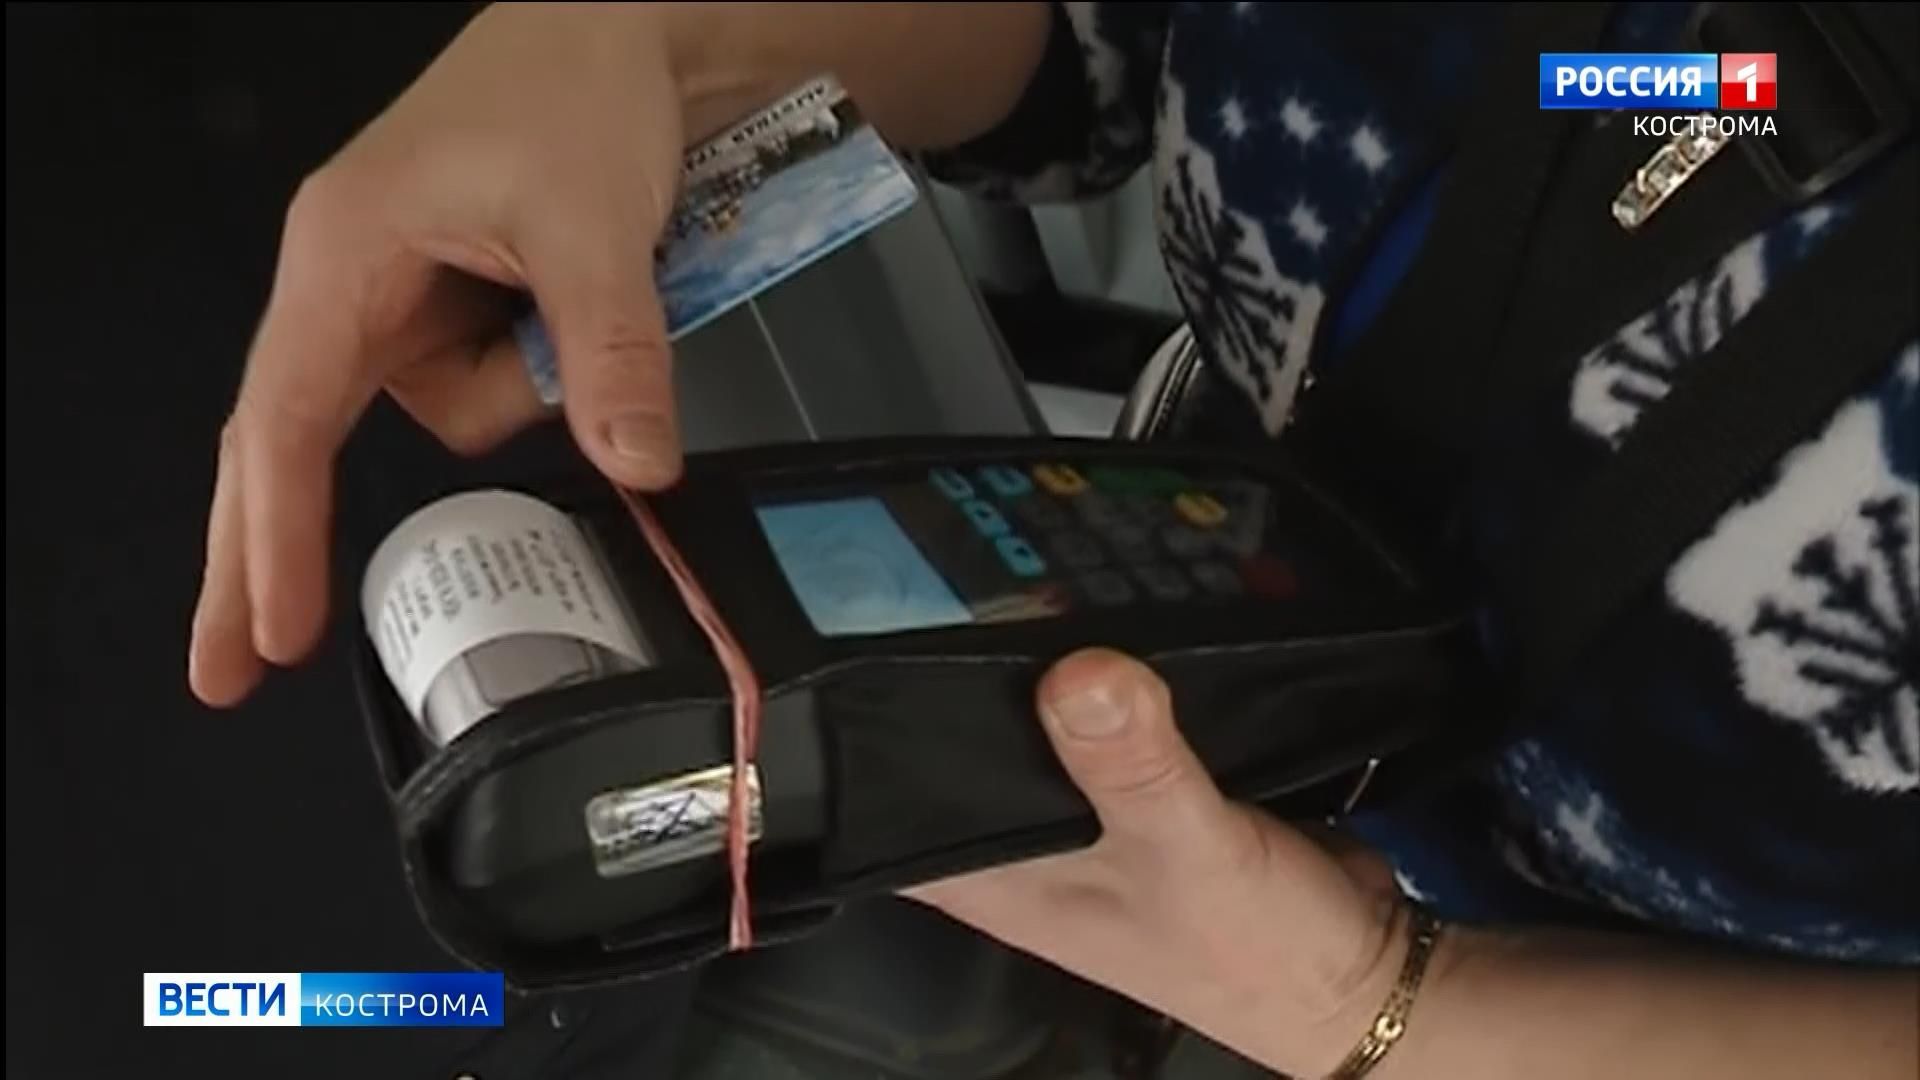 Власти Костромы приняли решение об изменении схемы действия транспортных карт